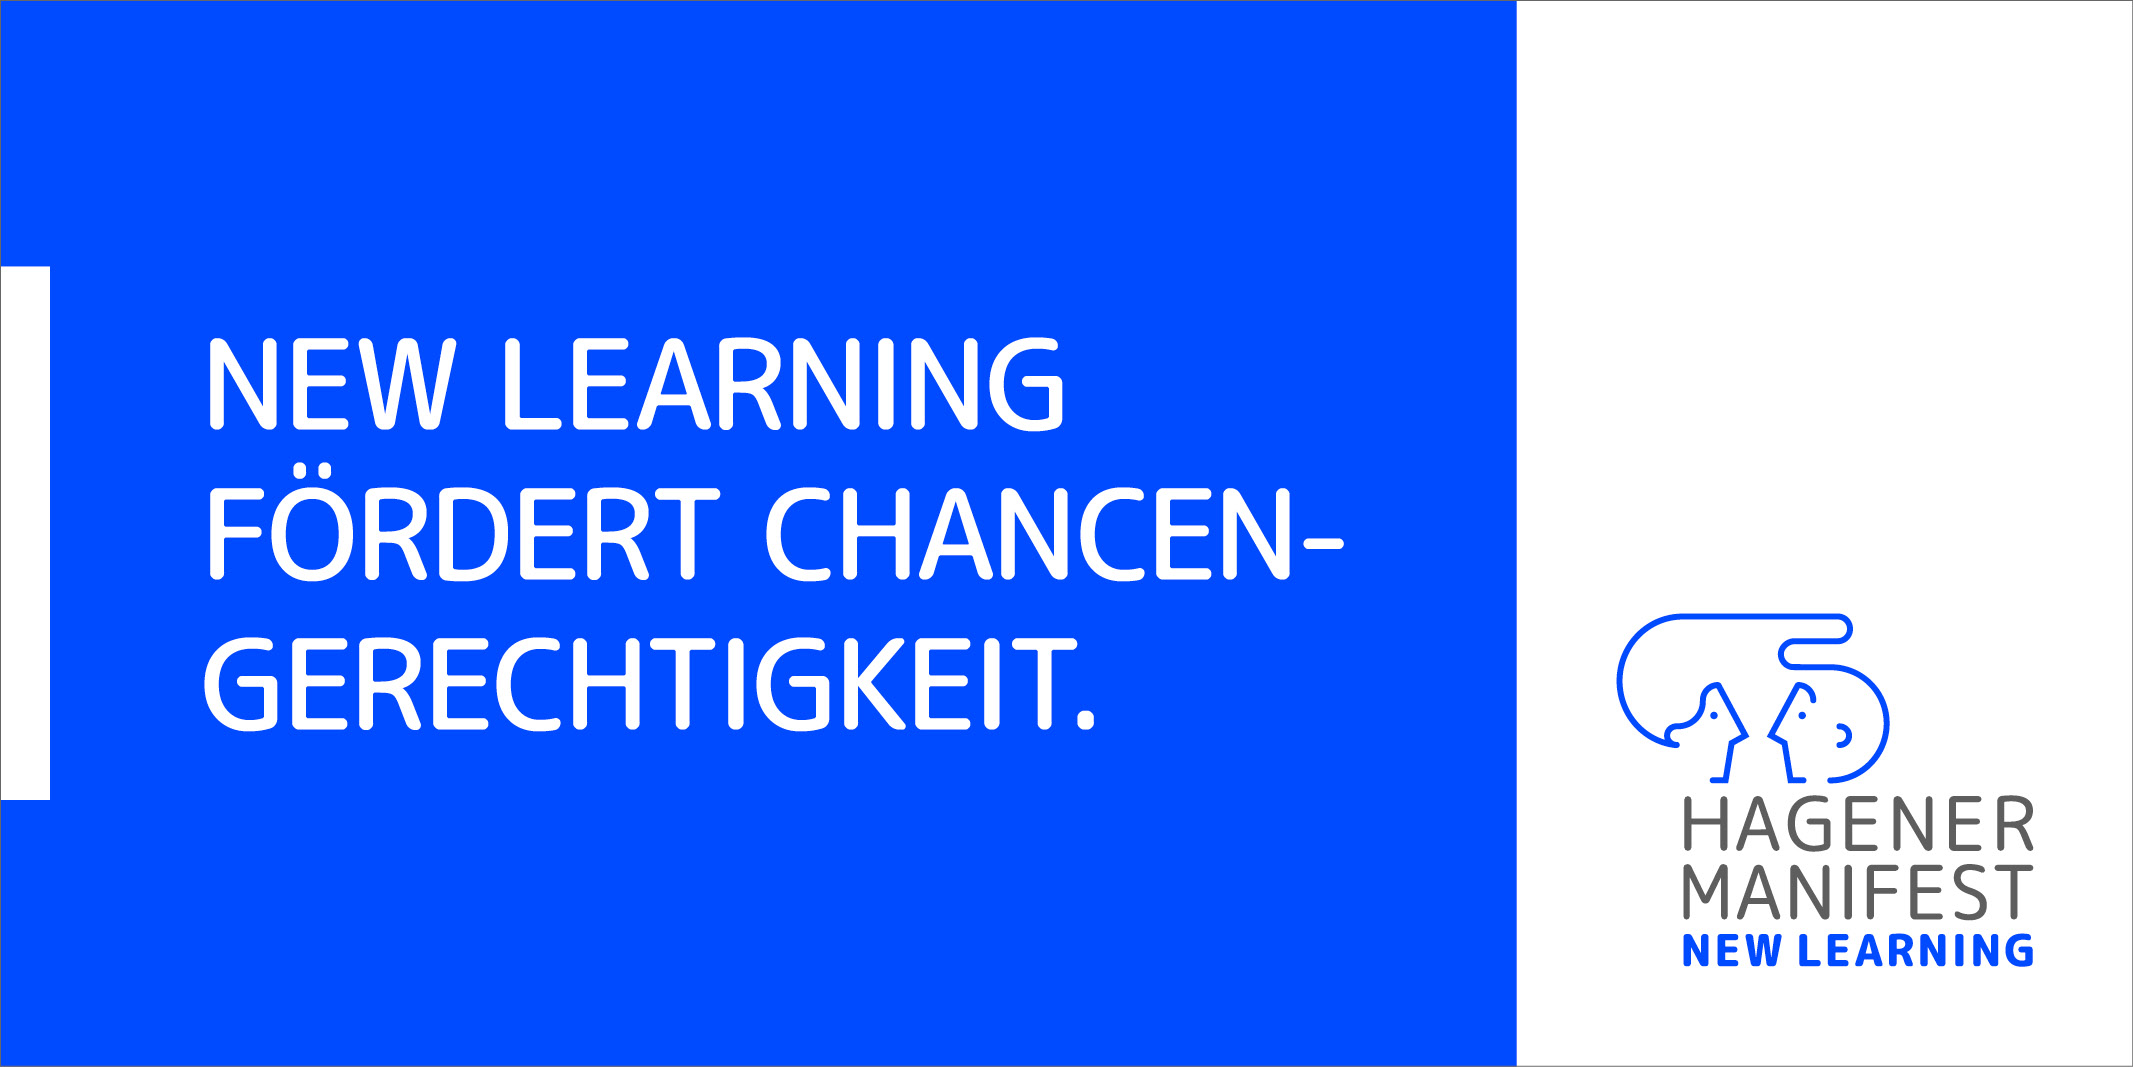 Eine der zwölf Thesen des "Hagener Manifest zu New Learning".